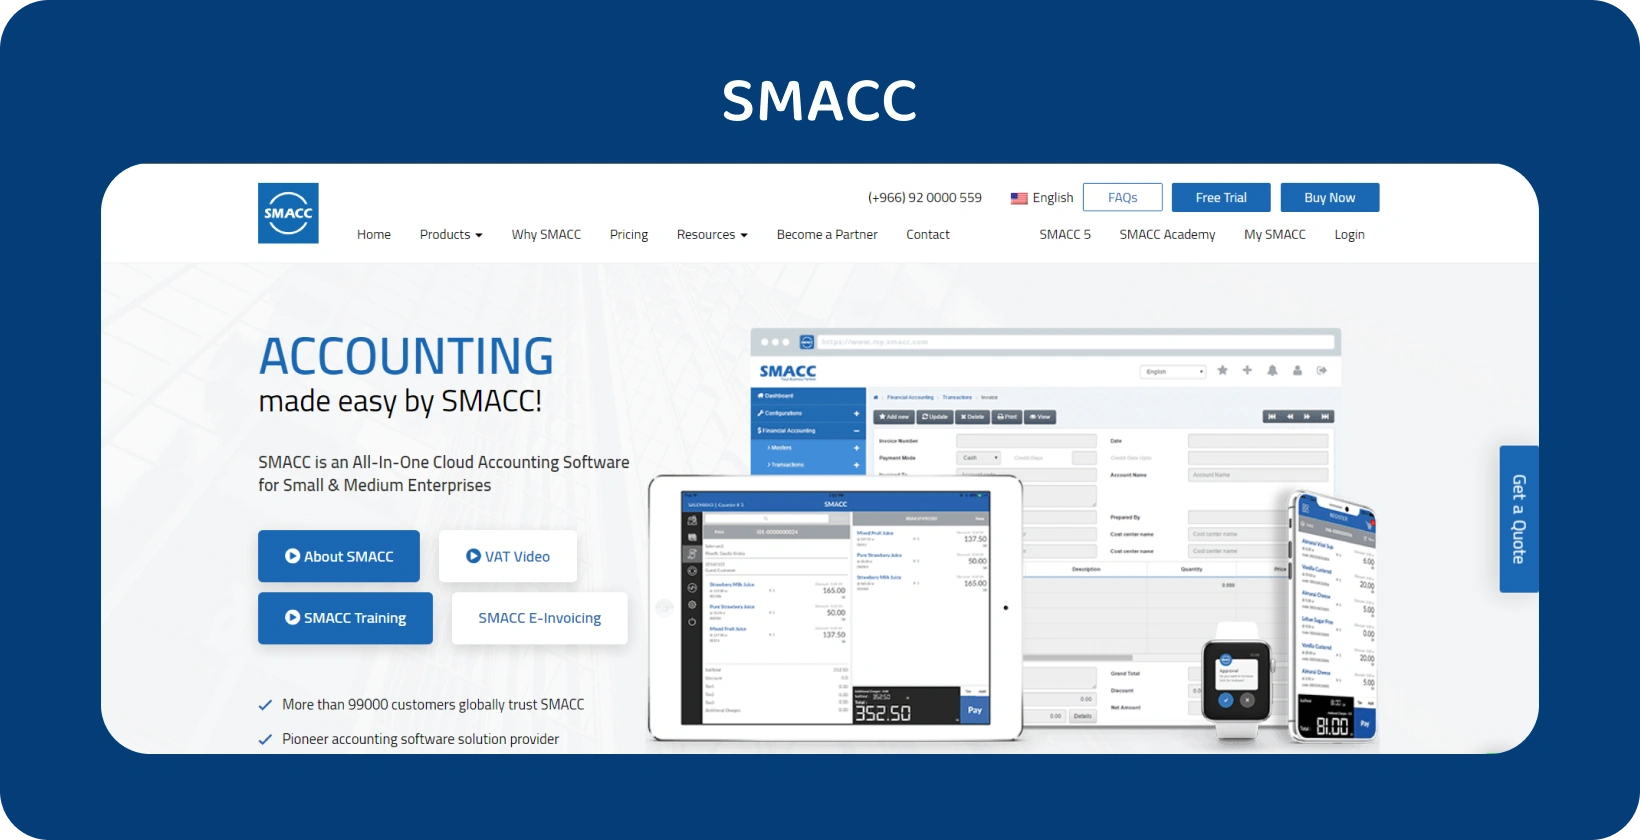 Phần mềm kế toán đám mây SMACC hiển thị trên nhiều thiết bị khác nhau, tăng cường quản lý tài chính cho các doanh nghiệp vừa và nhỏ.